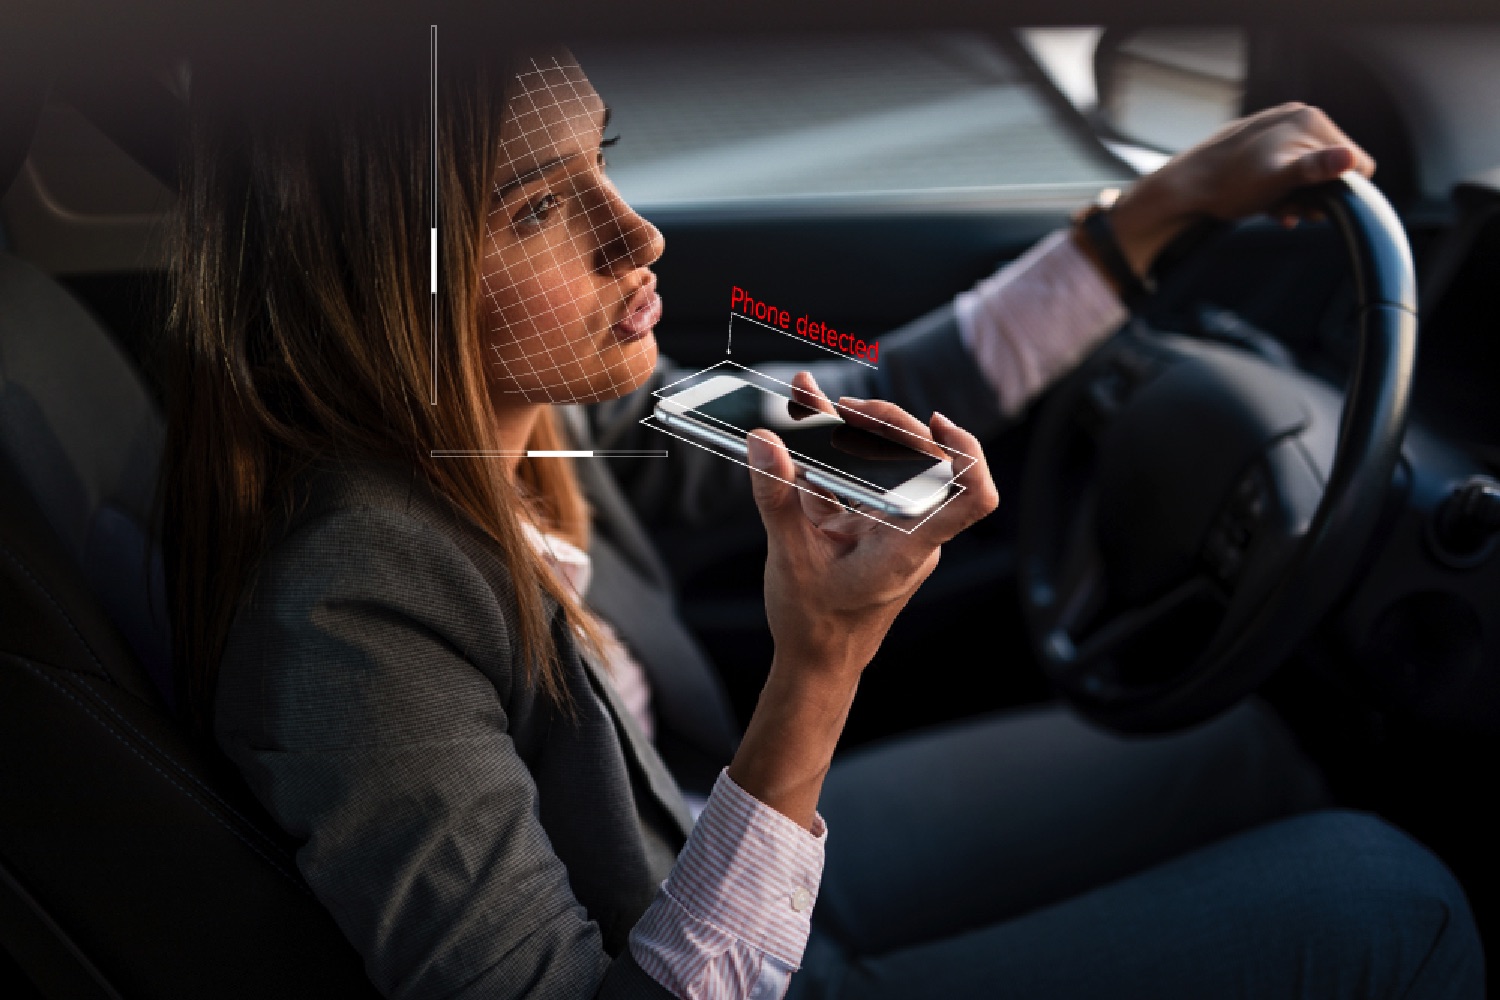 Камеры разговор по телефону. Разговор в машине. Человек в машине с телефоном. Девушка с мобильным телефоном. Курит за рулем.